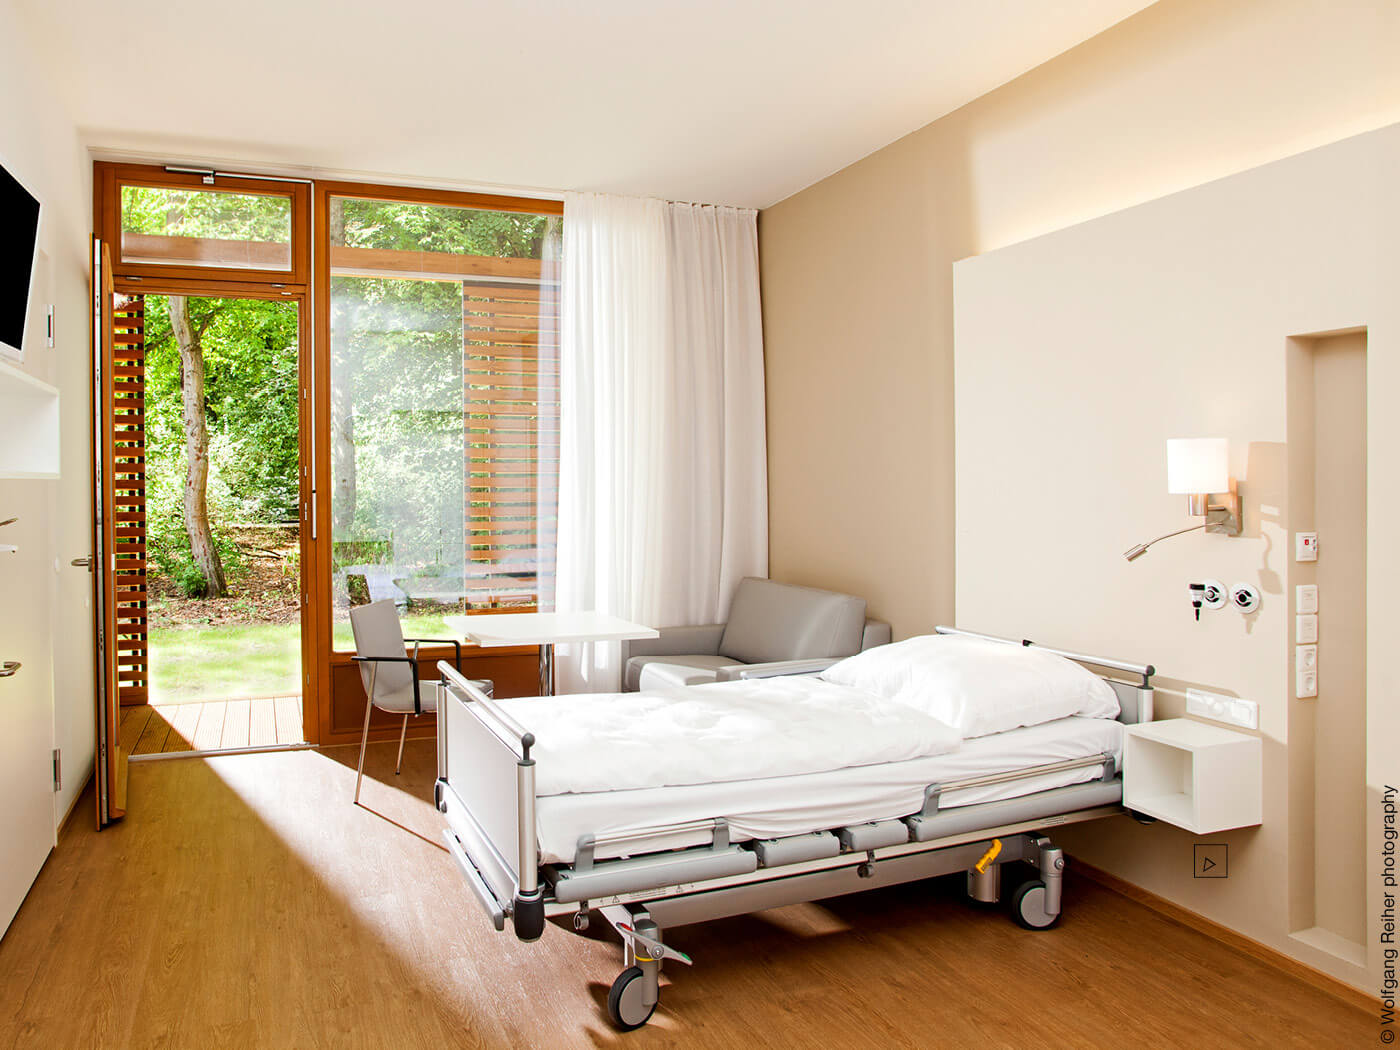 Krankenbett in einem kleinen Zimmer mit Terrasse